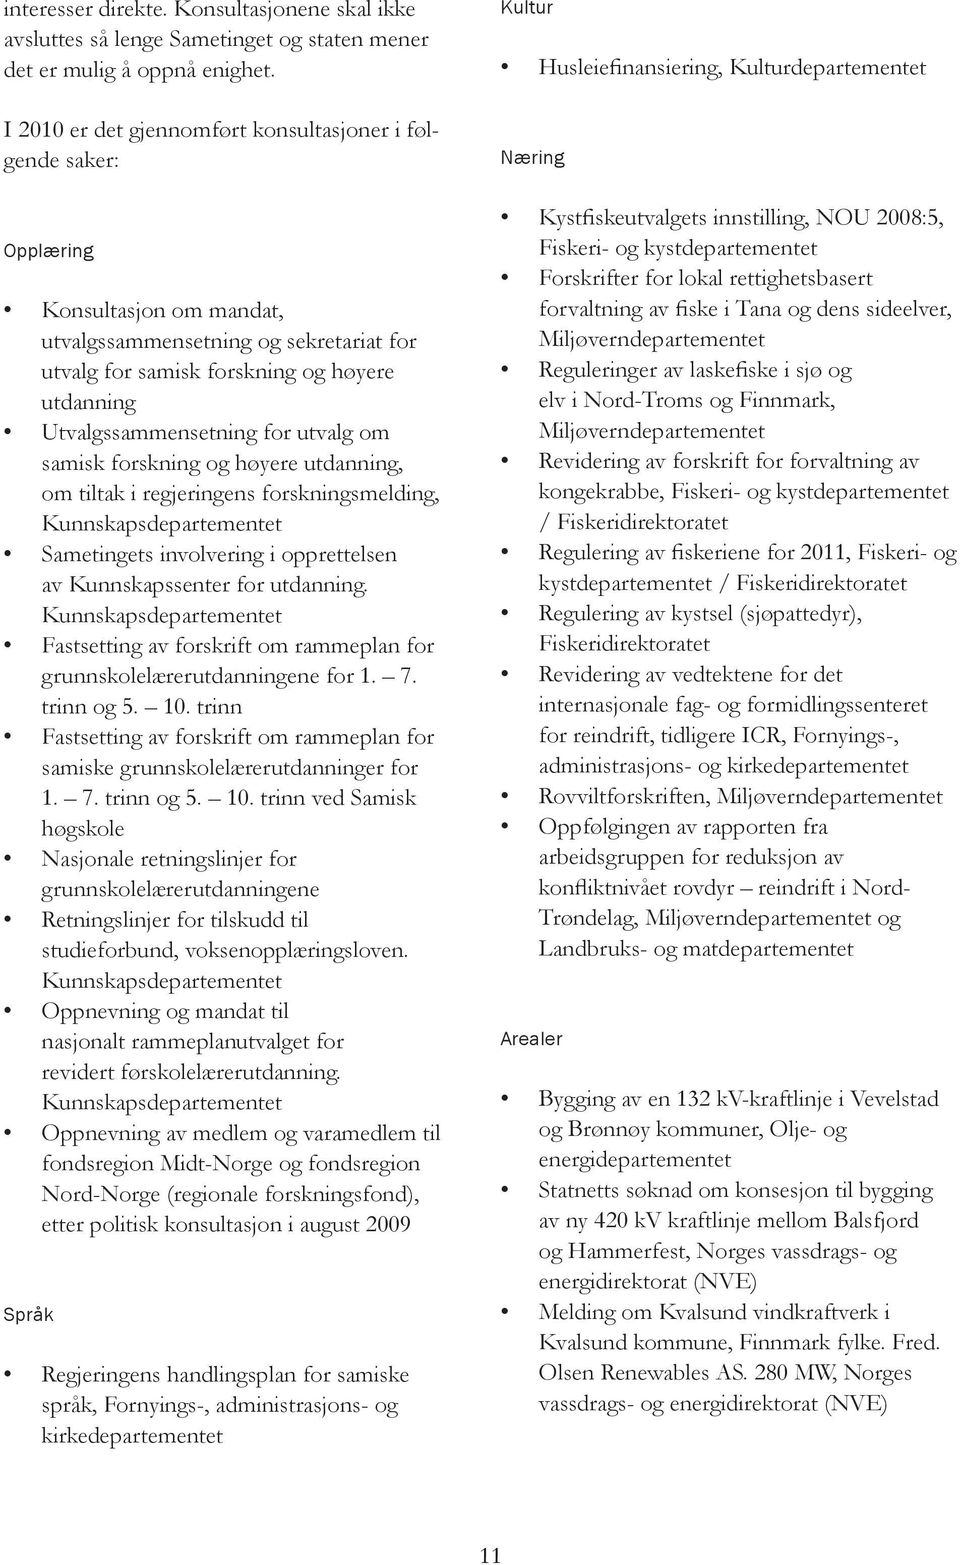 Utvalgssammensetning for utvalg om samisk forskning og høyere utdanning, om tiltak i regjeringens forskningsmelding, Kunnskapsdepartementet Sametingets involvering i opprettelsen av Kunnskapssenter